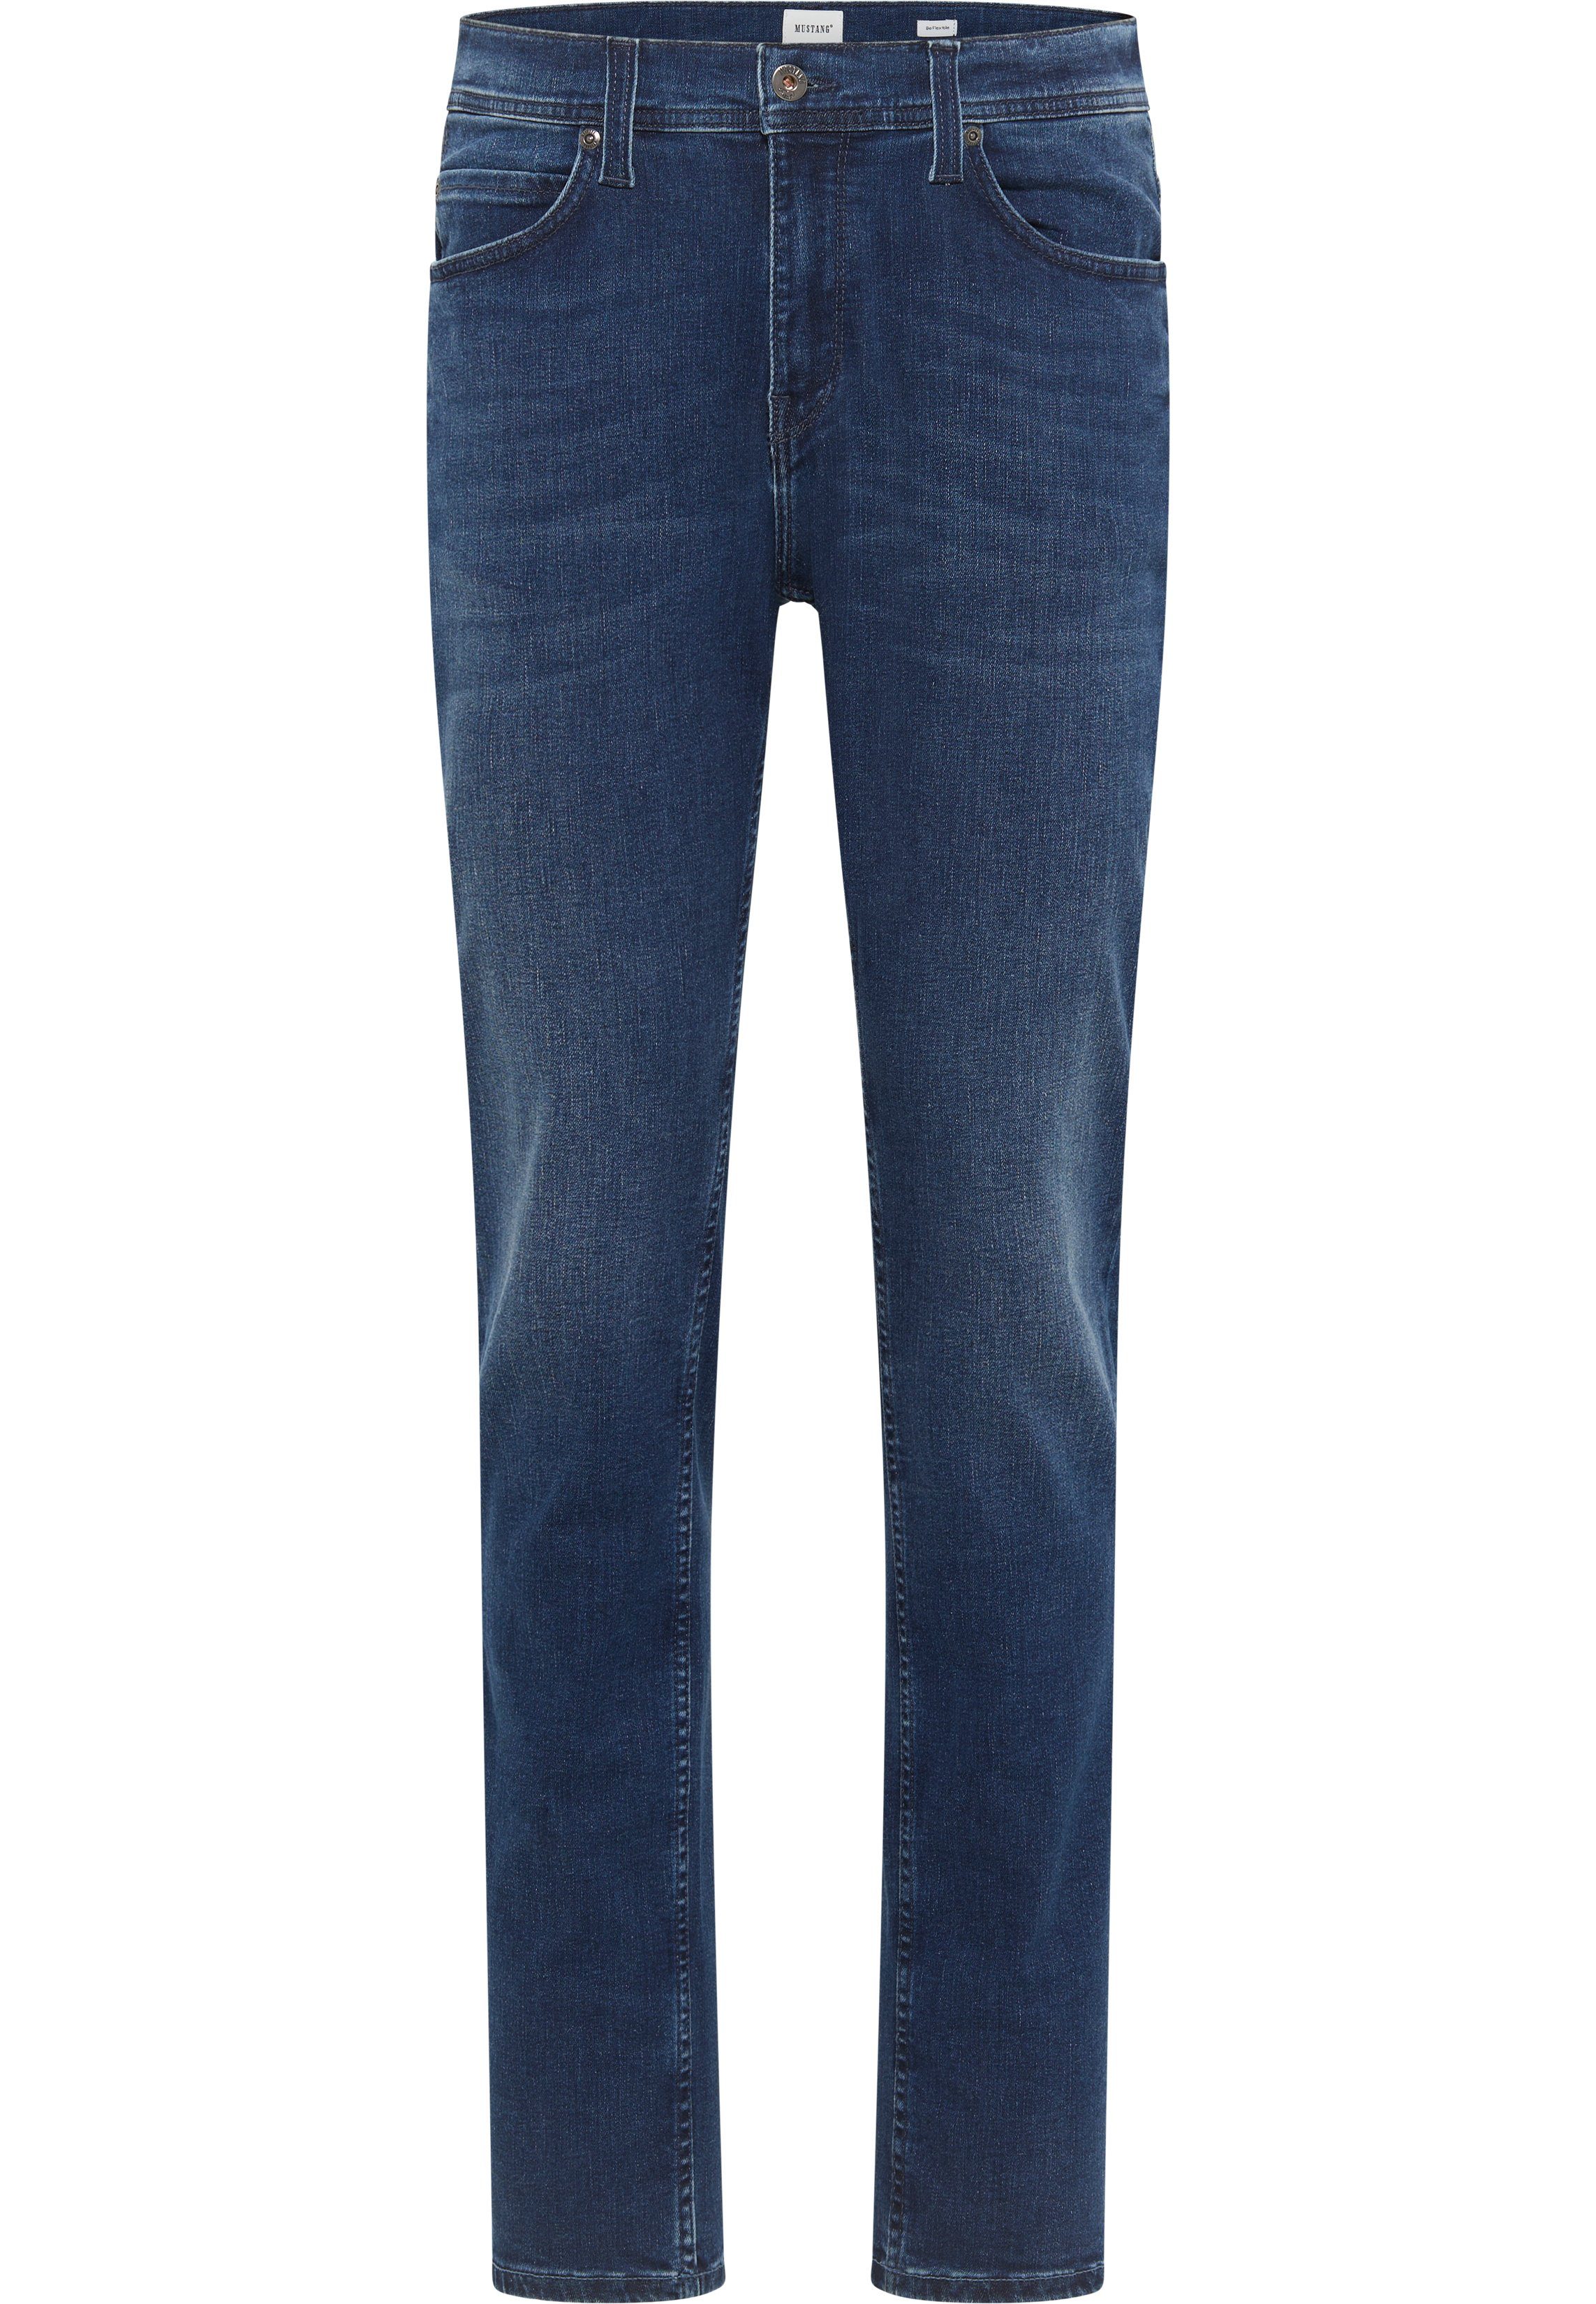 blau-5000982 Slim-fit-Jeans MUSTANG Style Vegas